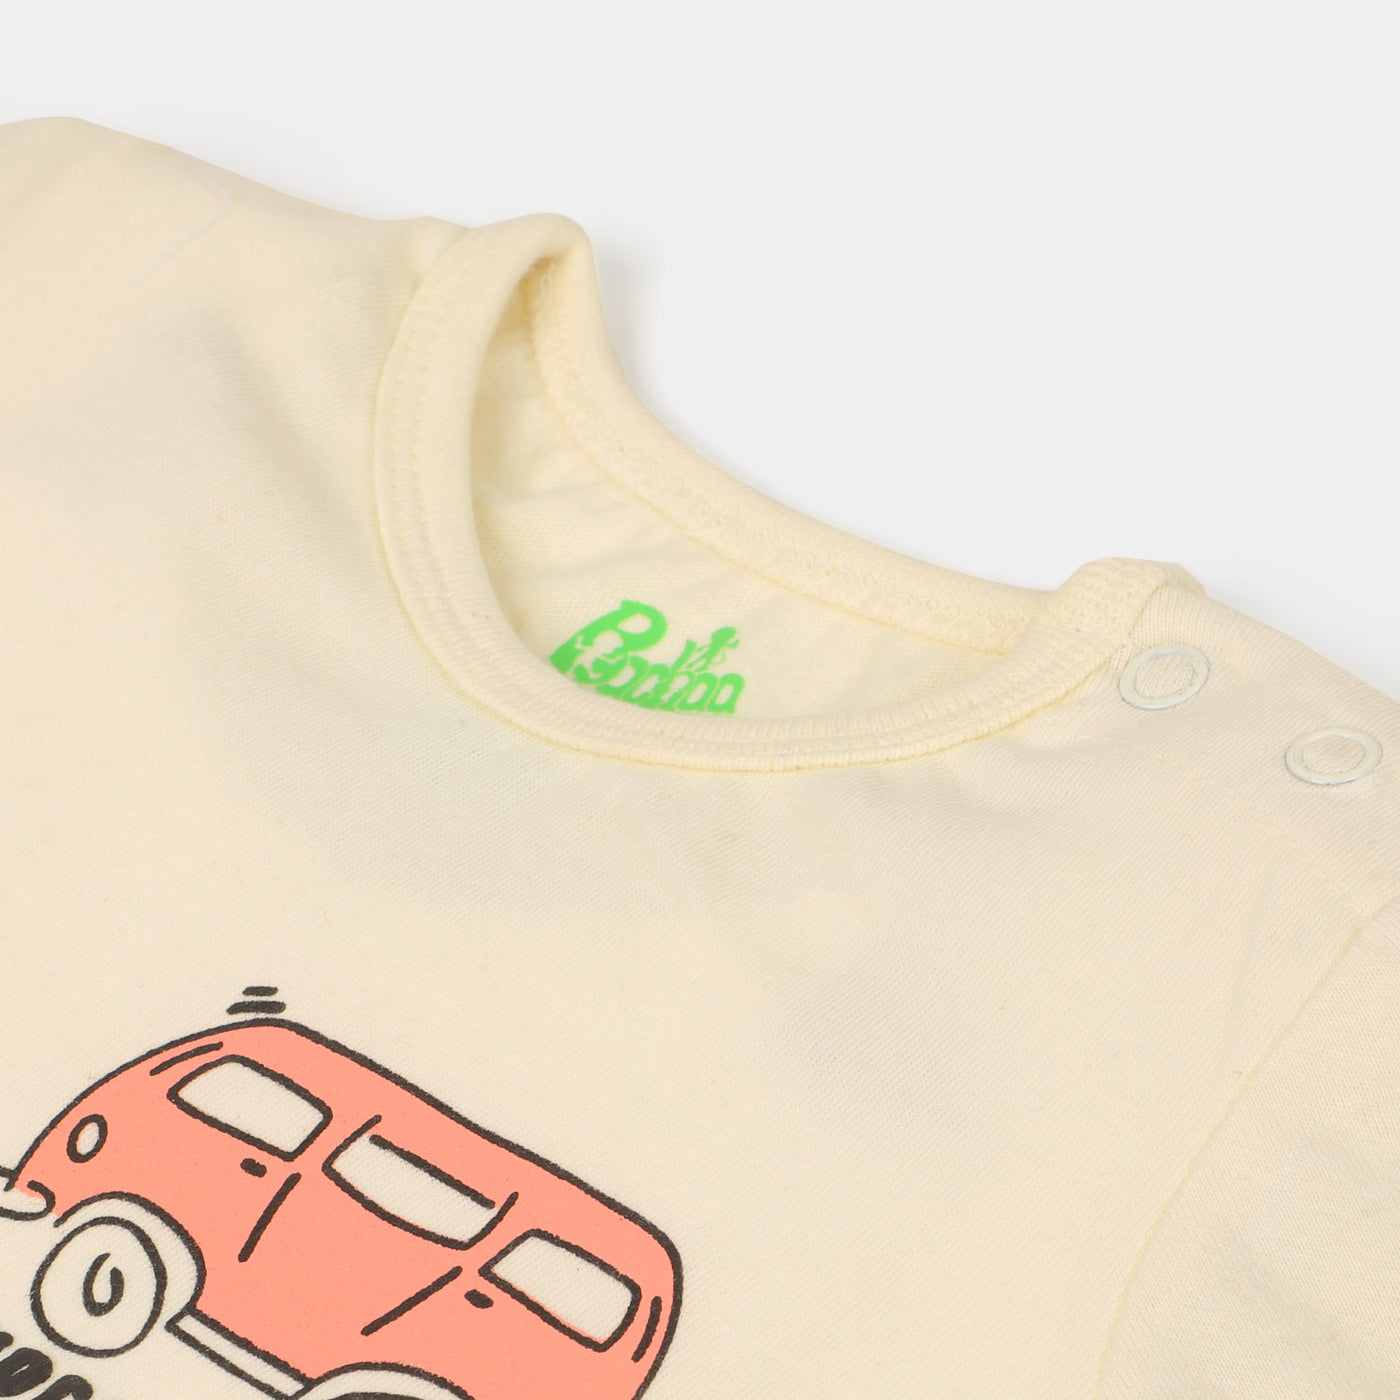 Infant Boys Cotton T-Shirt Super Good - Cream